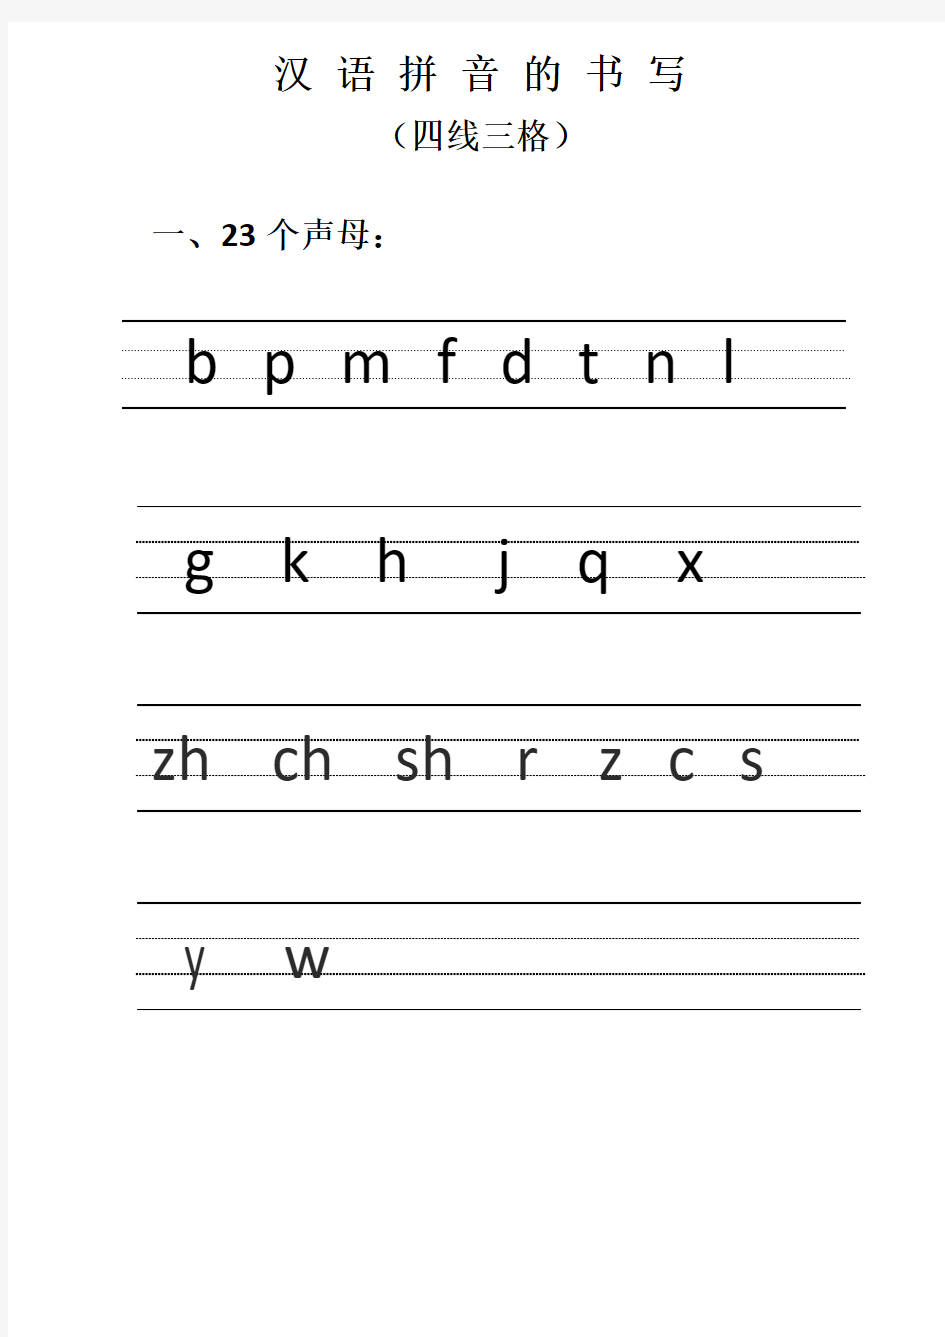 汉语拼音的书写格式--图文